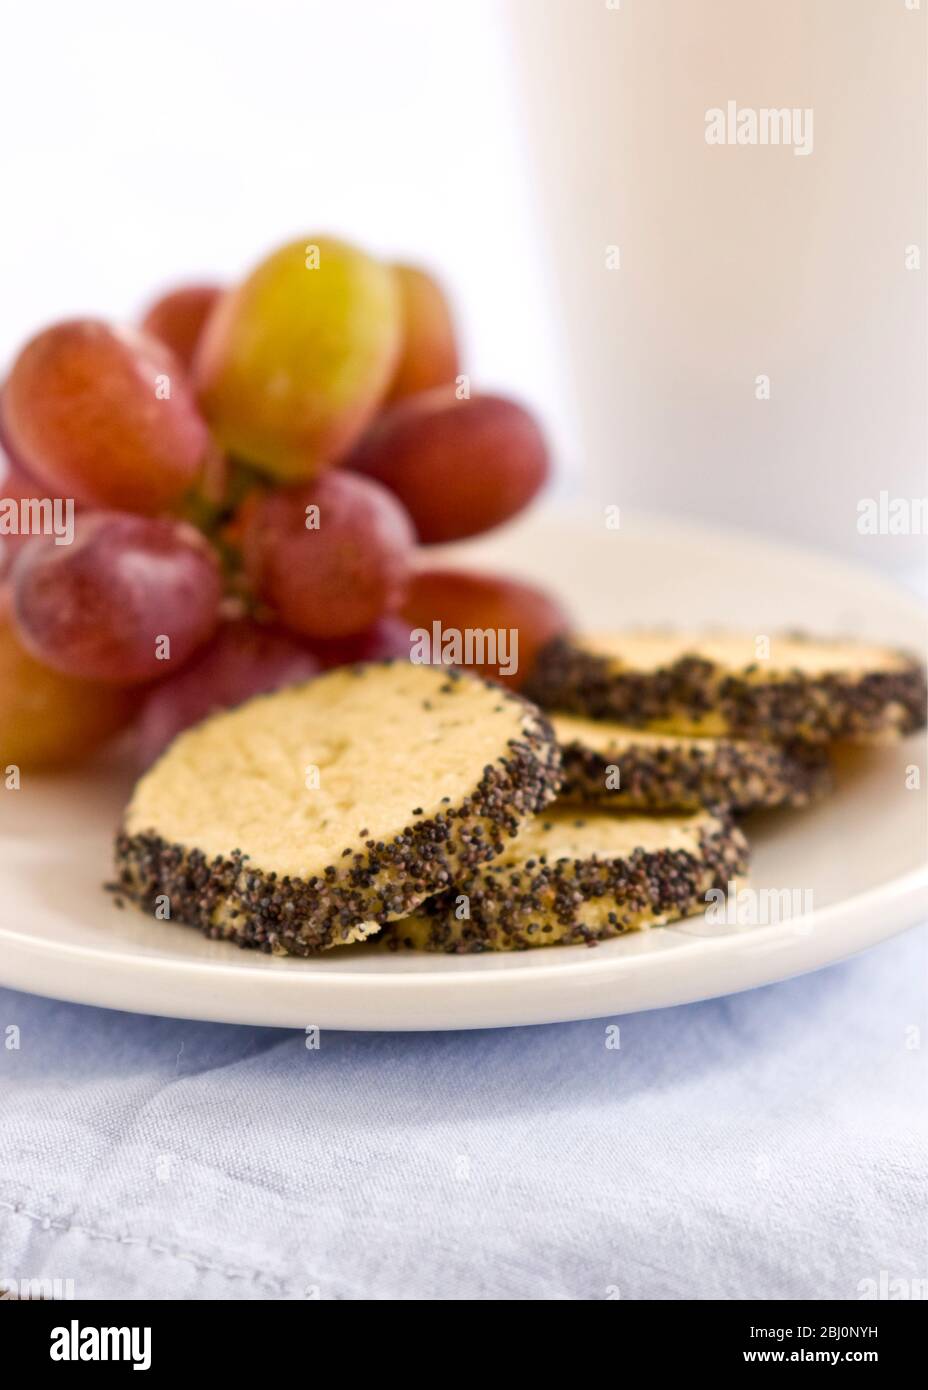 Leichter Snack oder Mahlzeit aus hausgemachtem Käsekeks mit Mohn-Rand, serviert mit roten Trauben - Stockfoto